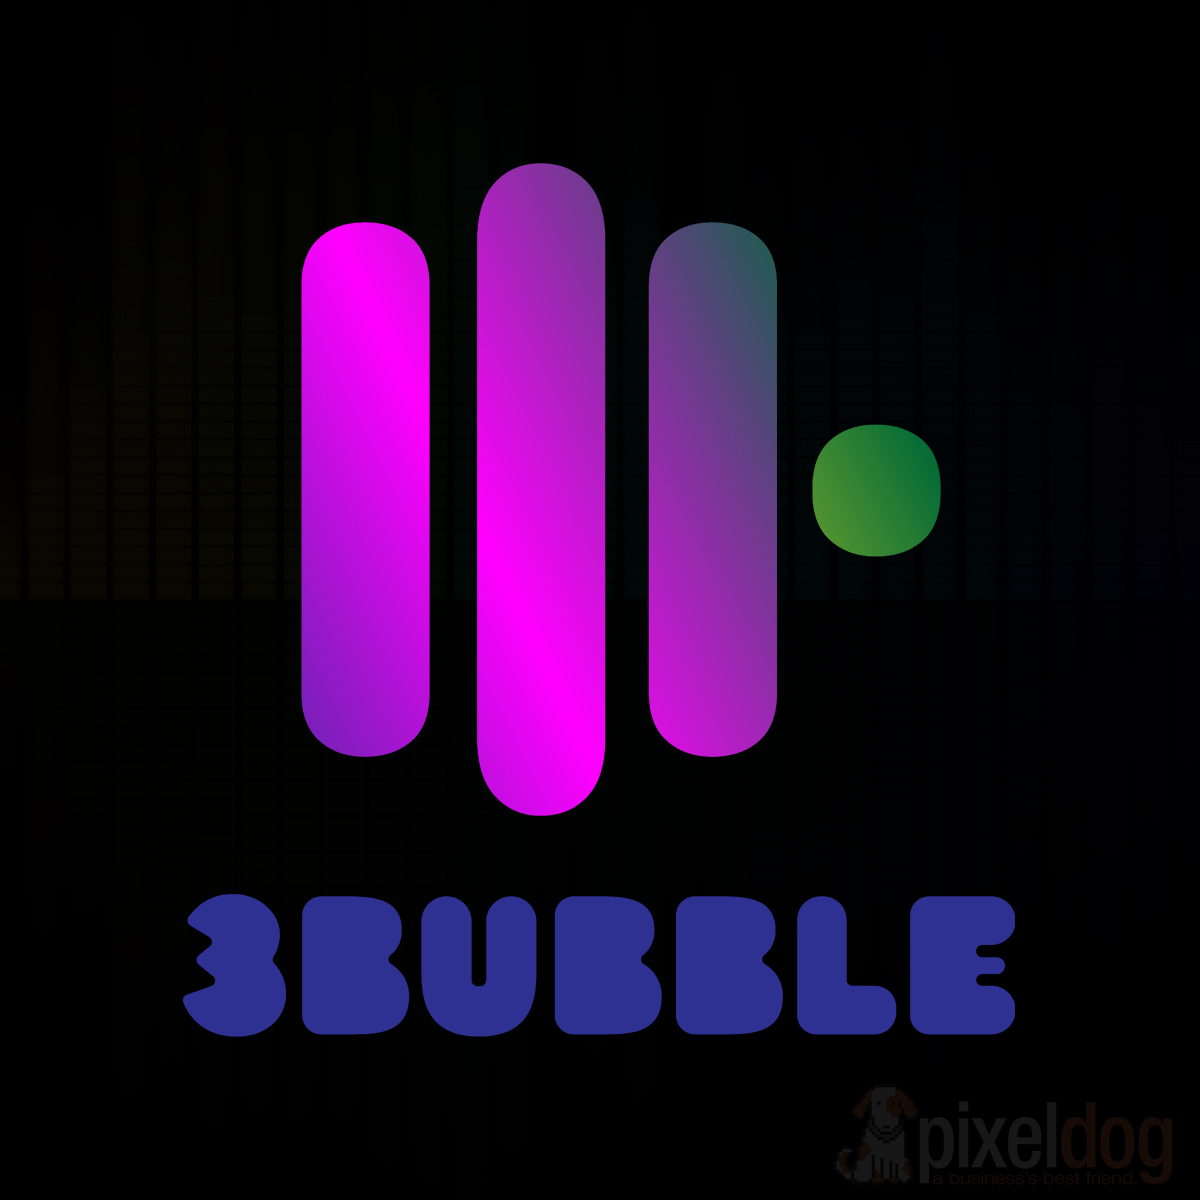 3Bubble (Musician)